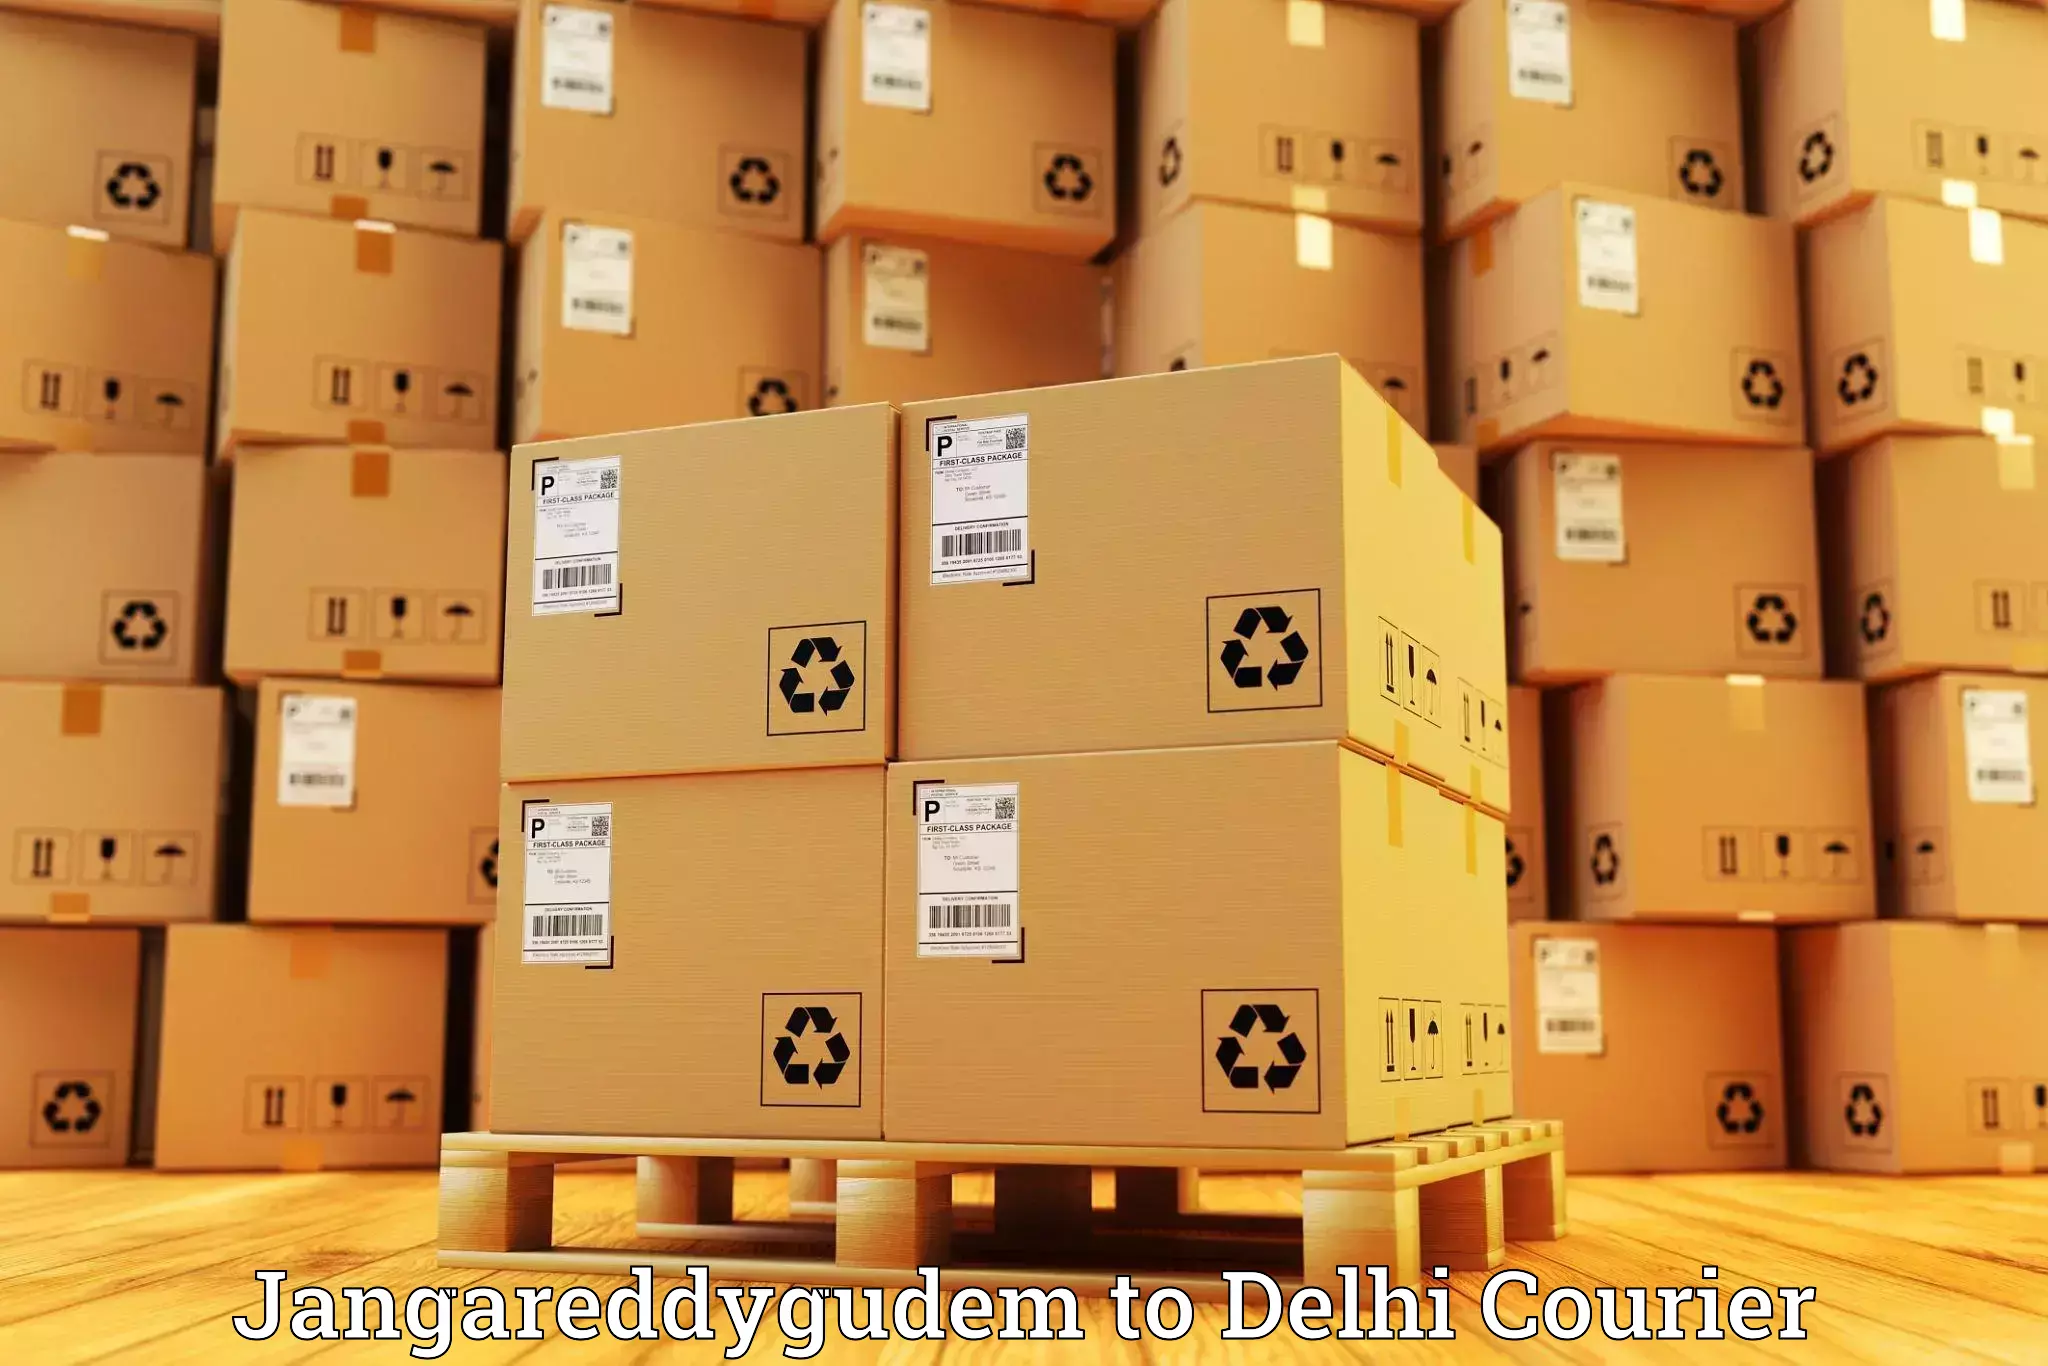 High-capacity parcel service Jangareddygudem to Subhash Nagar